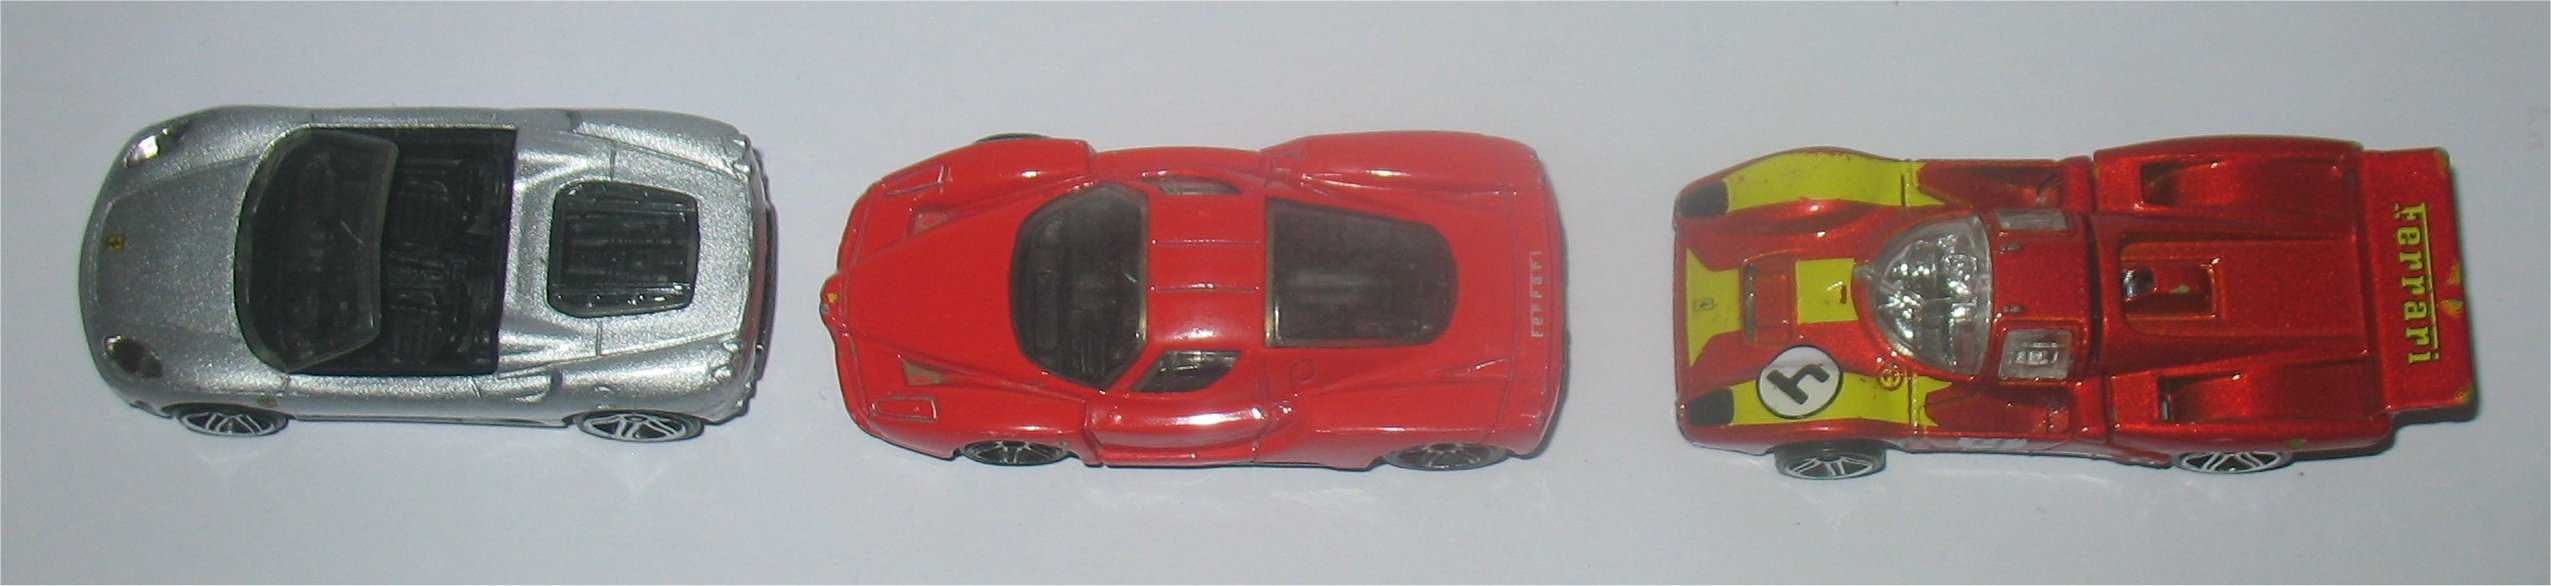 Hot Wheels - 3 Ferrari